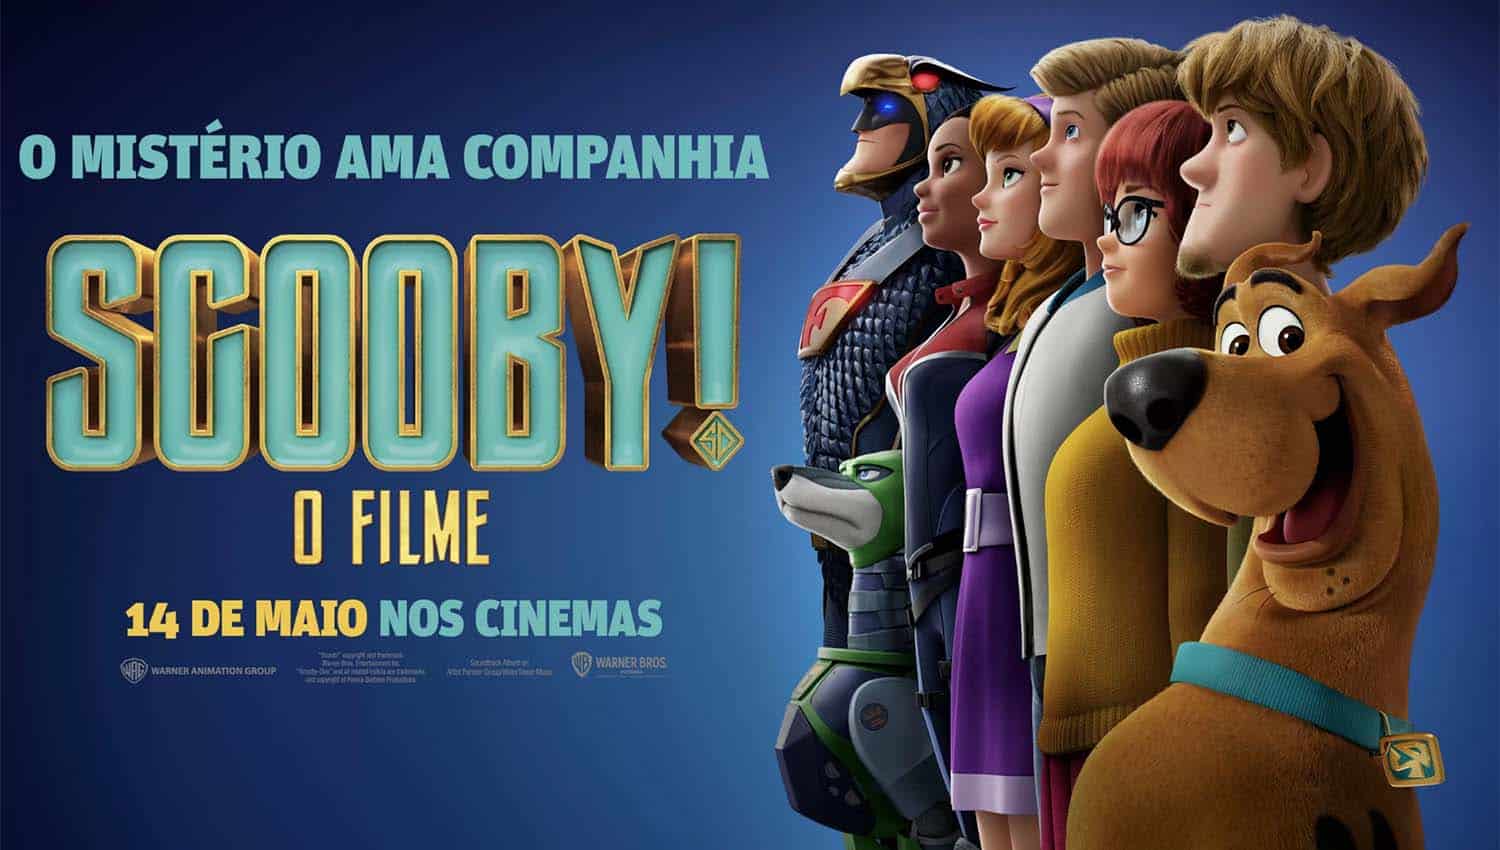 Scooby O Filme cartaz de cinema pt br